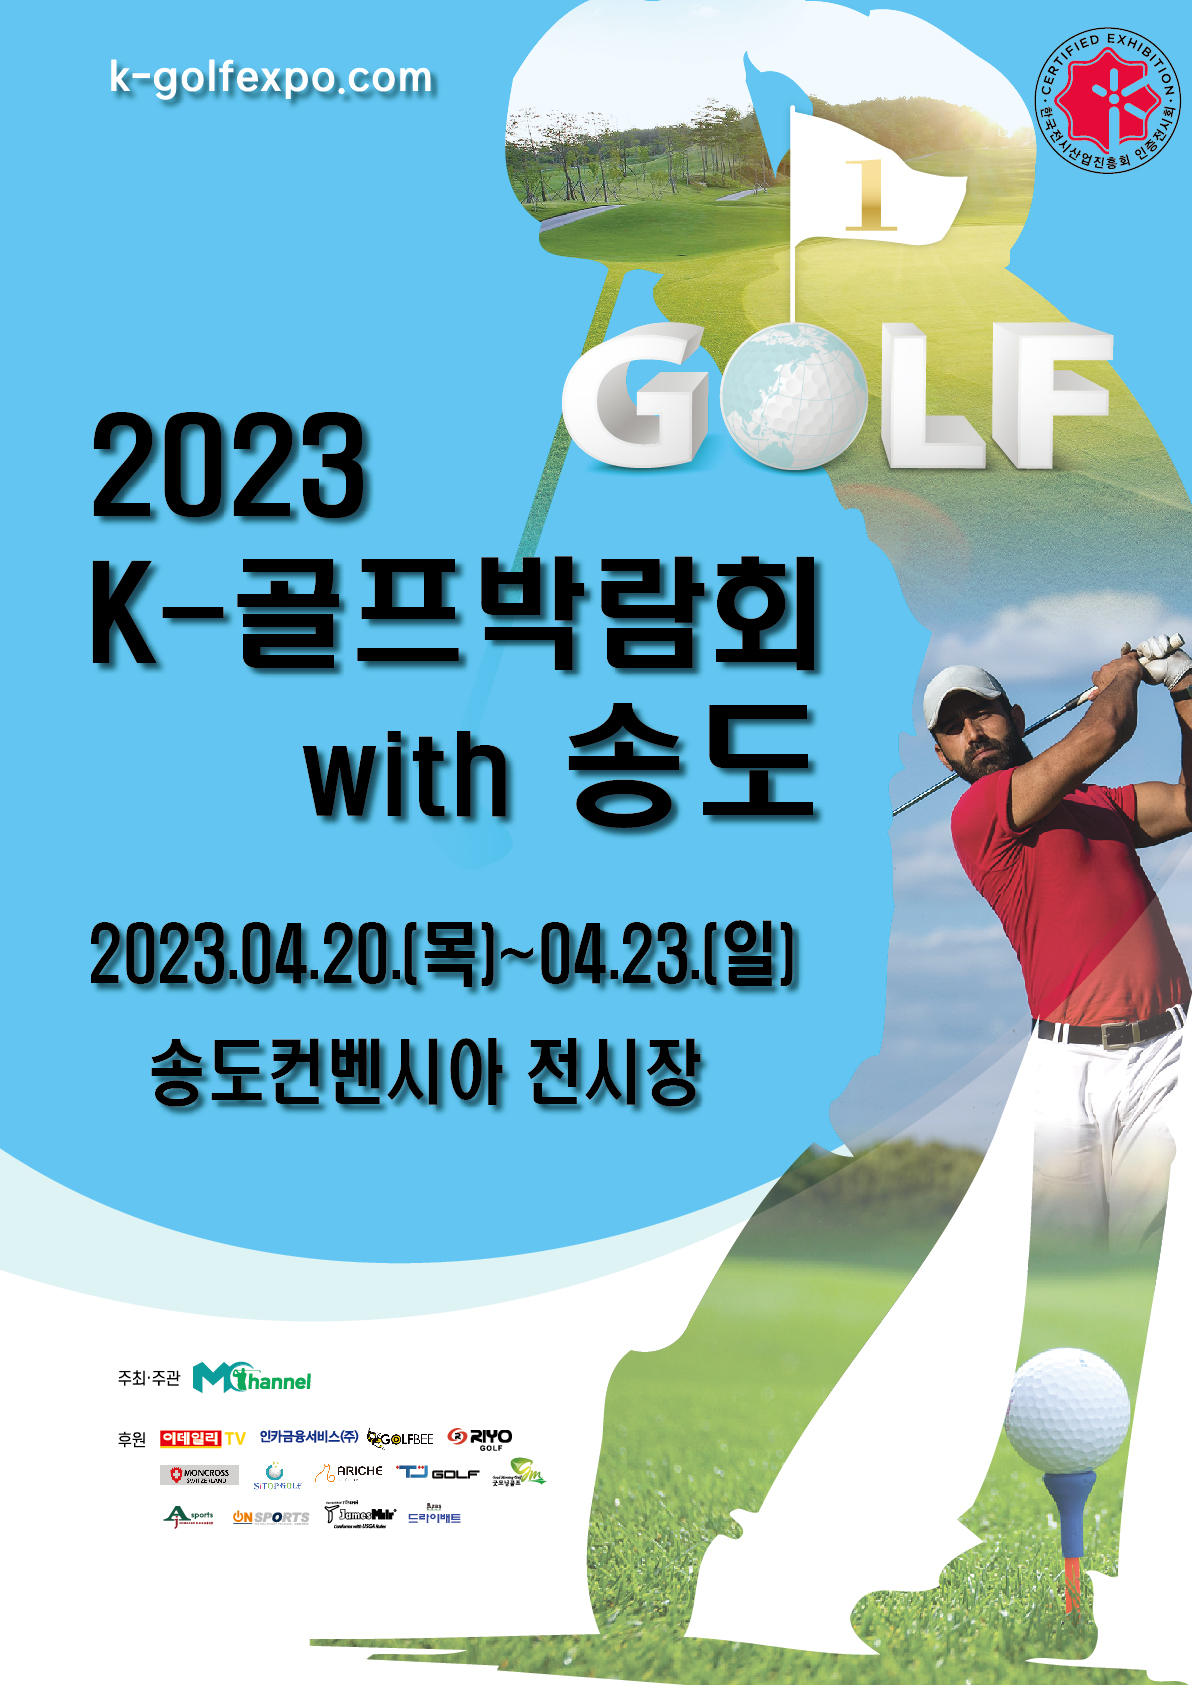 2023년 송도 K-골프박람회 WITH 송도